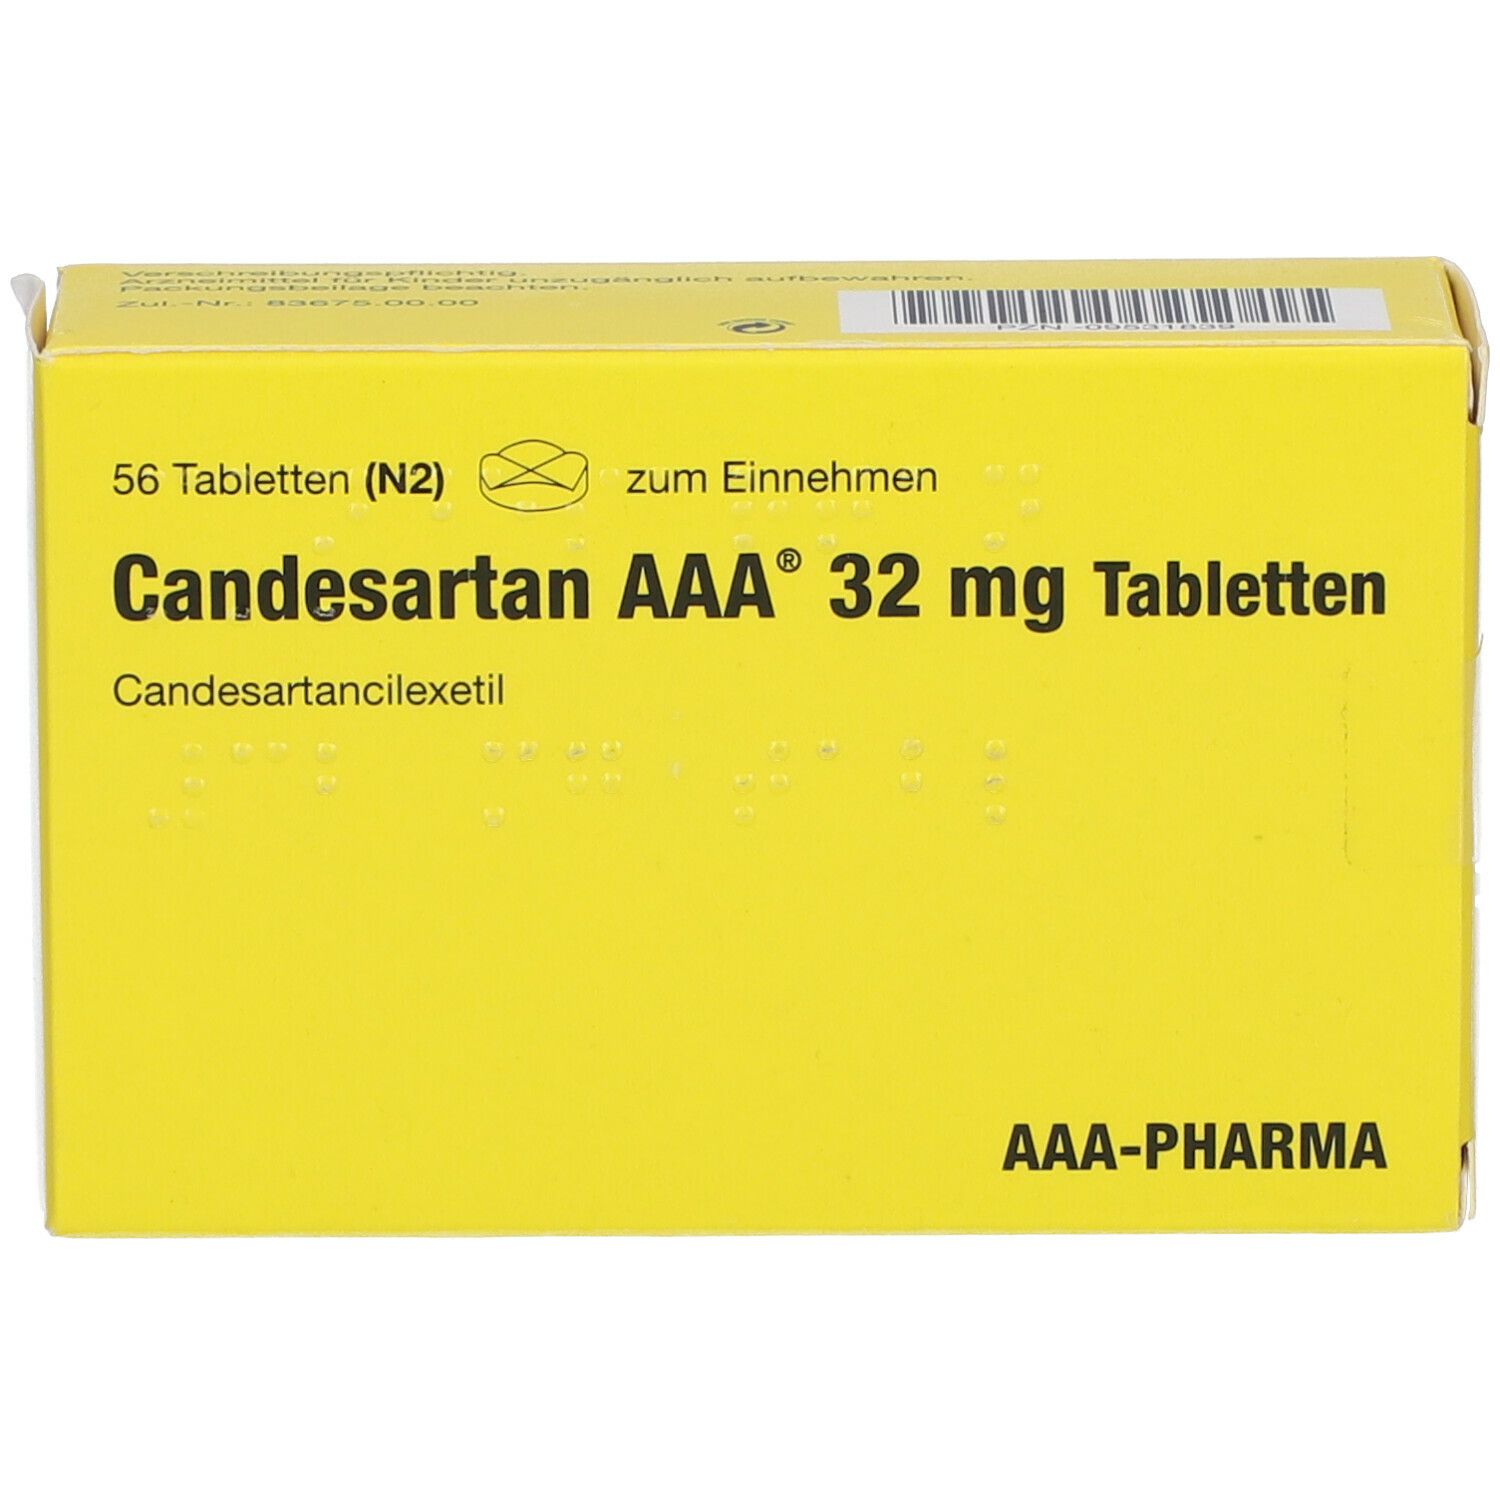 Candesartan AAA® 32 mg